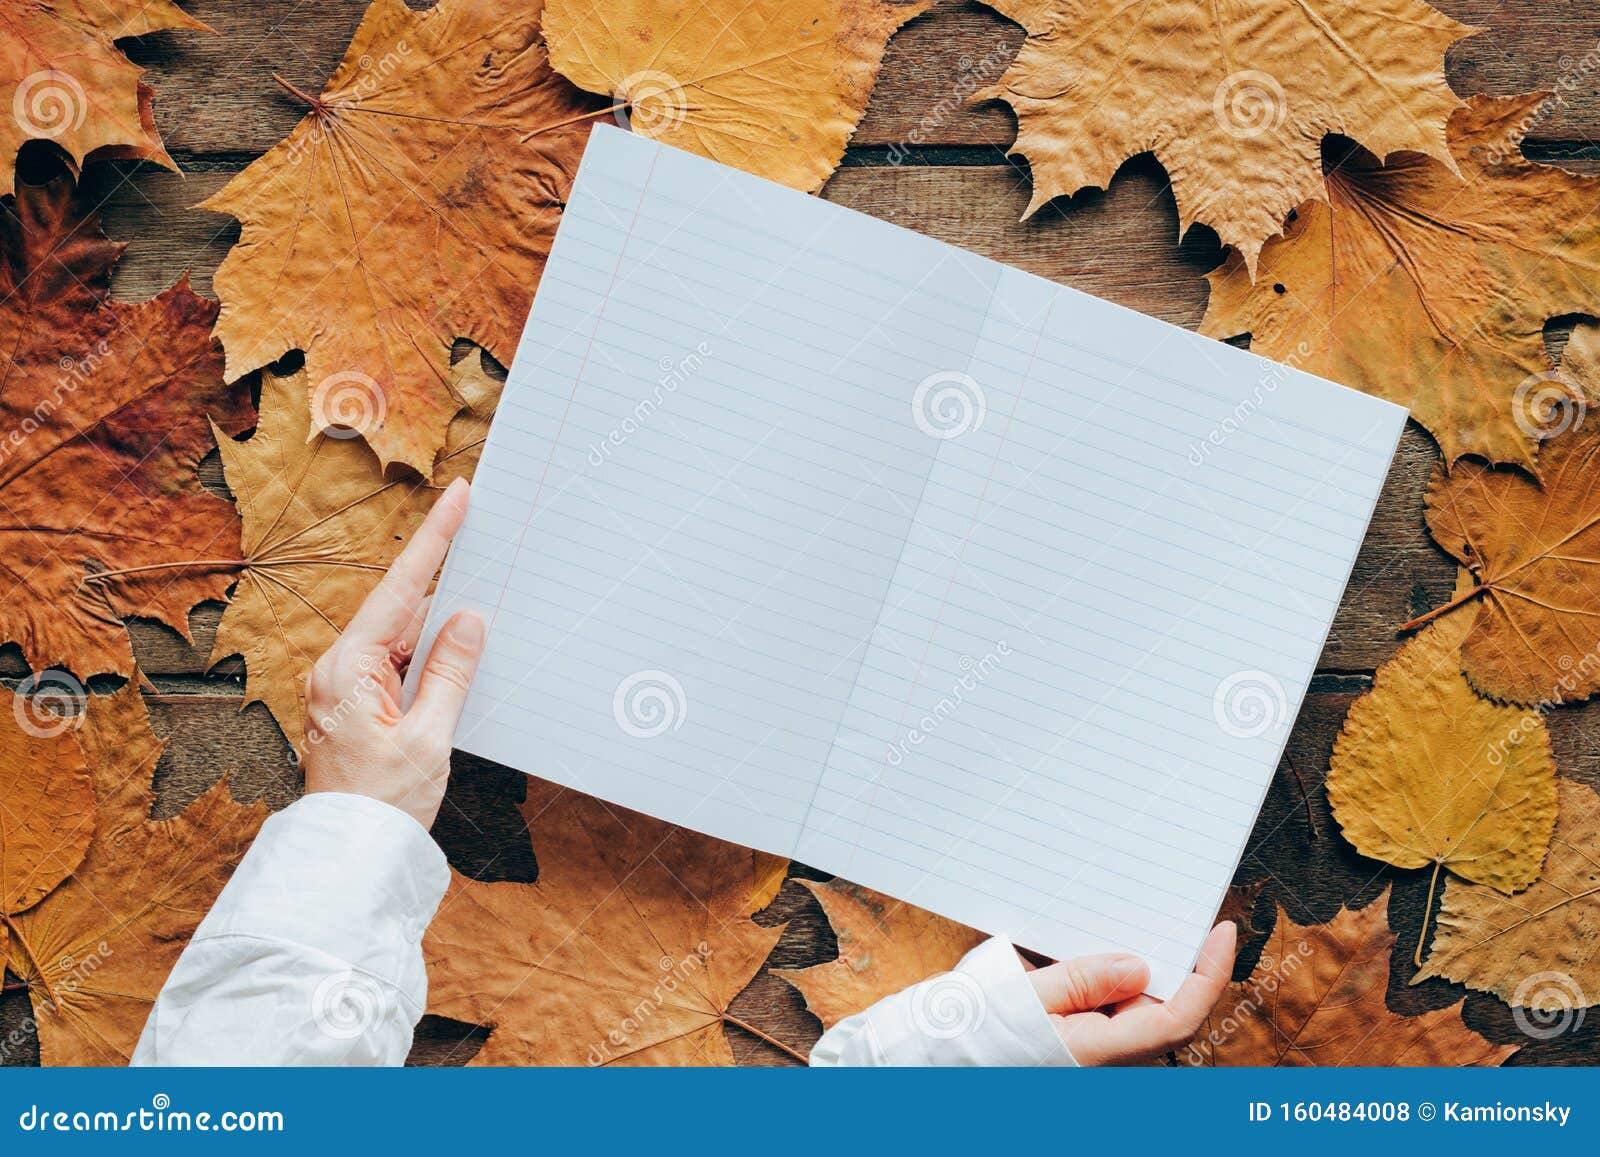 秋叶木背景 有女人的手和复印空间9月1日的壁纸库存照片 图片包括有9月1日的壁纸 秋叶木背景 有女人的手和复印空间